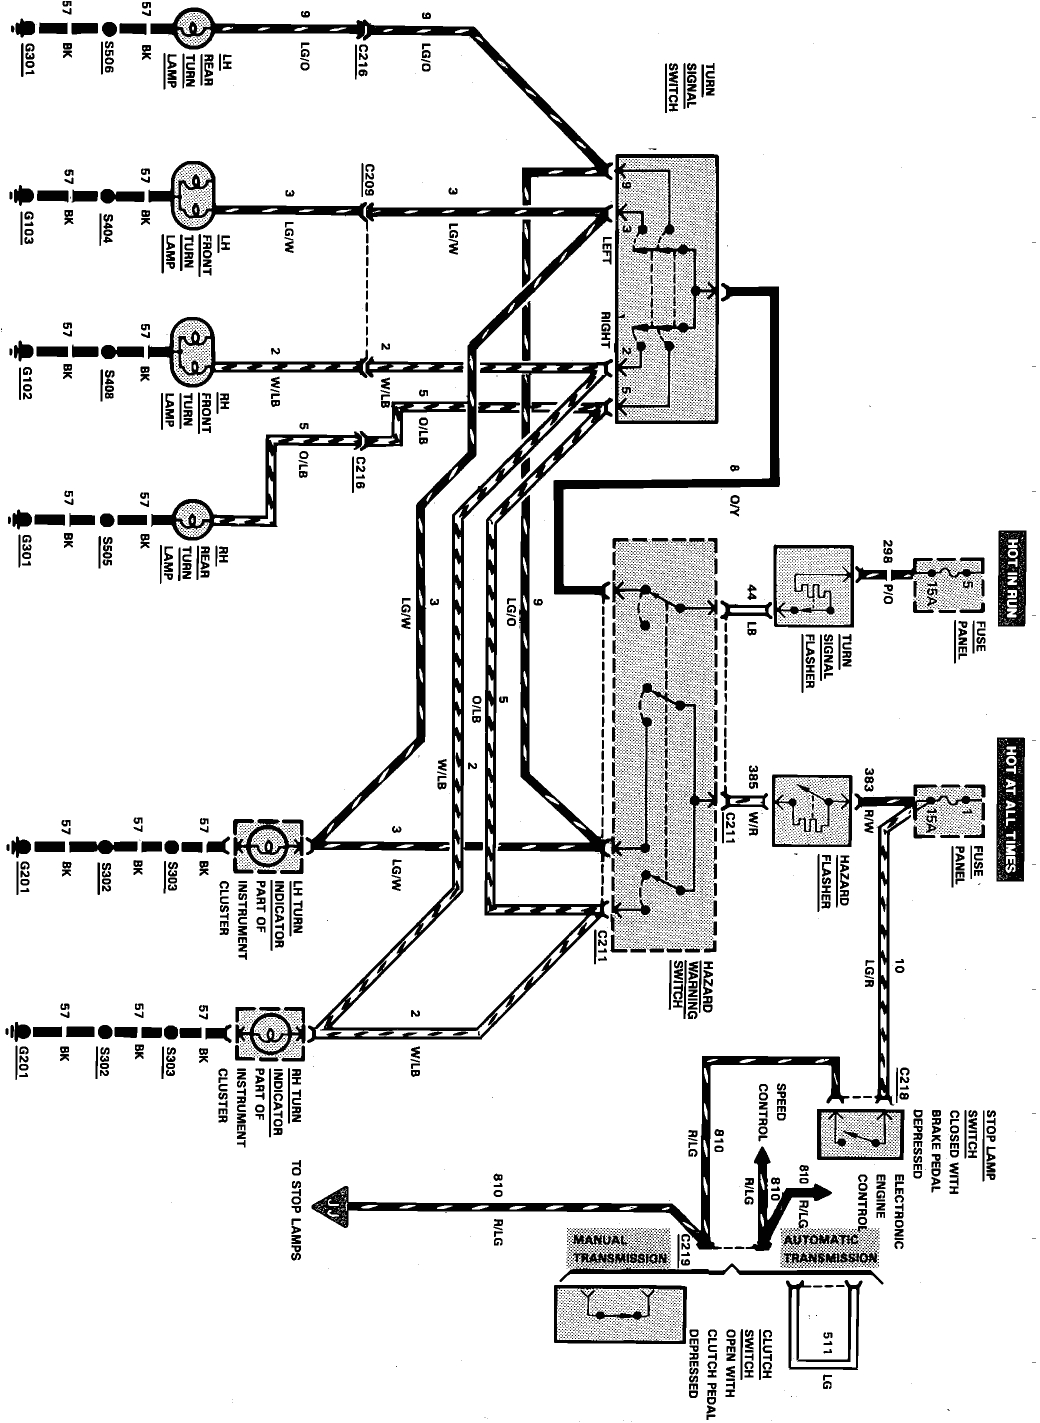 88 mustang gt wiring diagram wiring diagram article mix 1988 mustang wiring diagram wiring diagram database